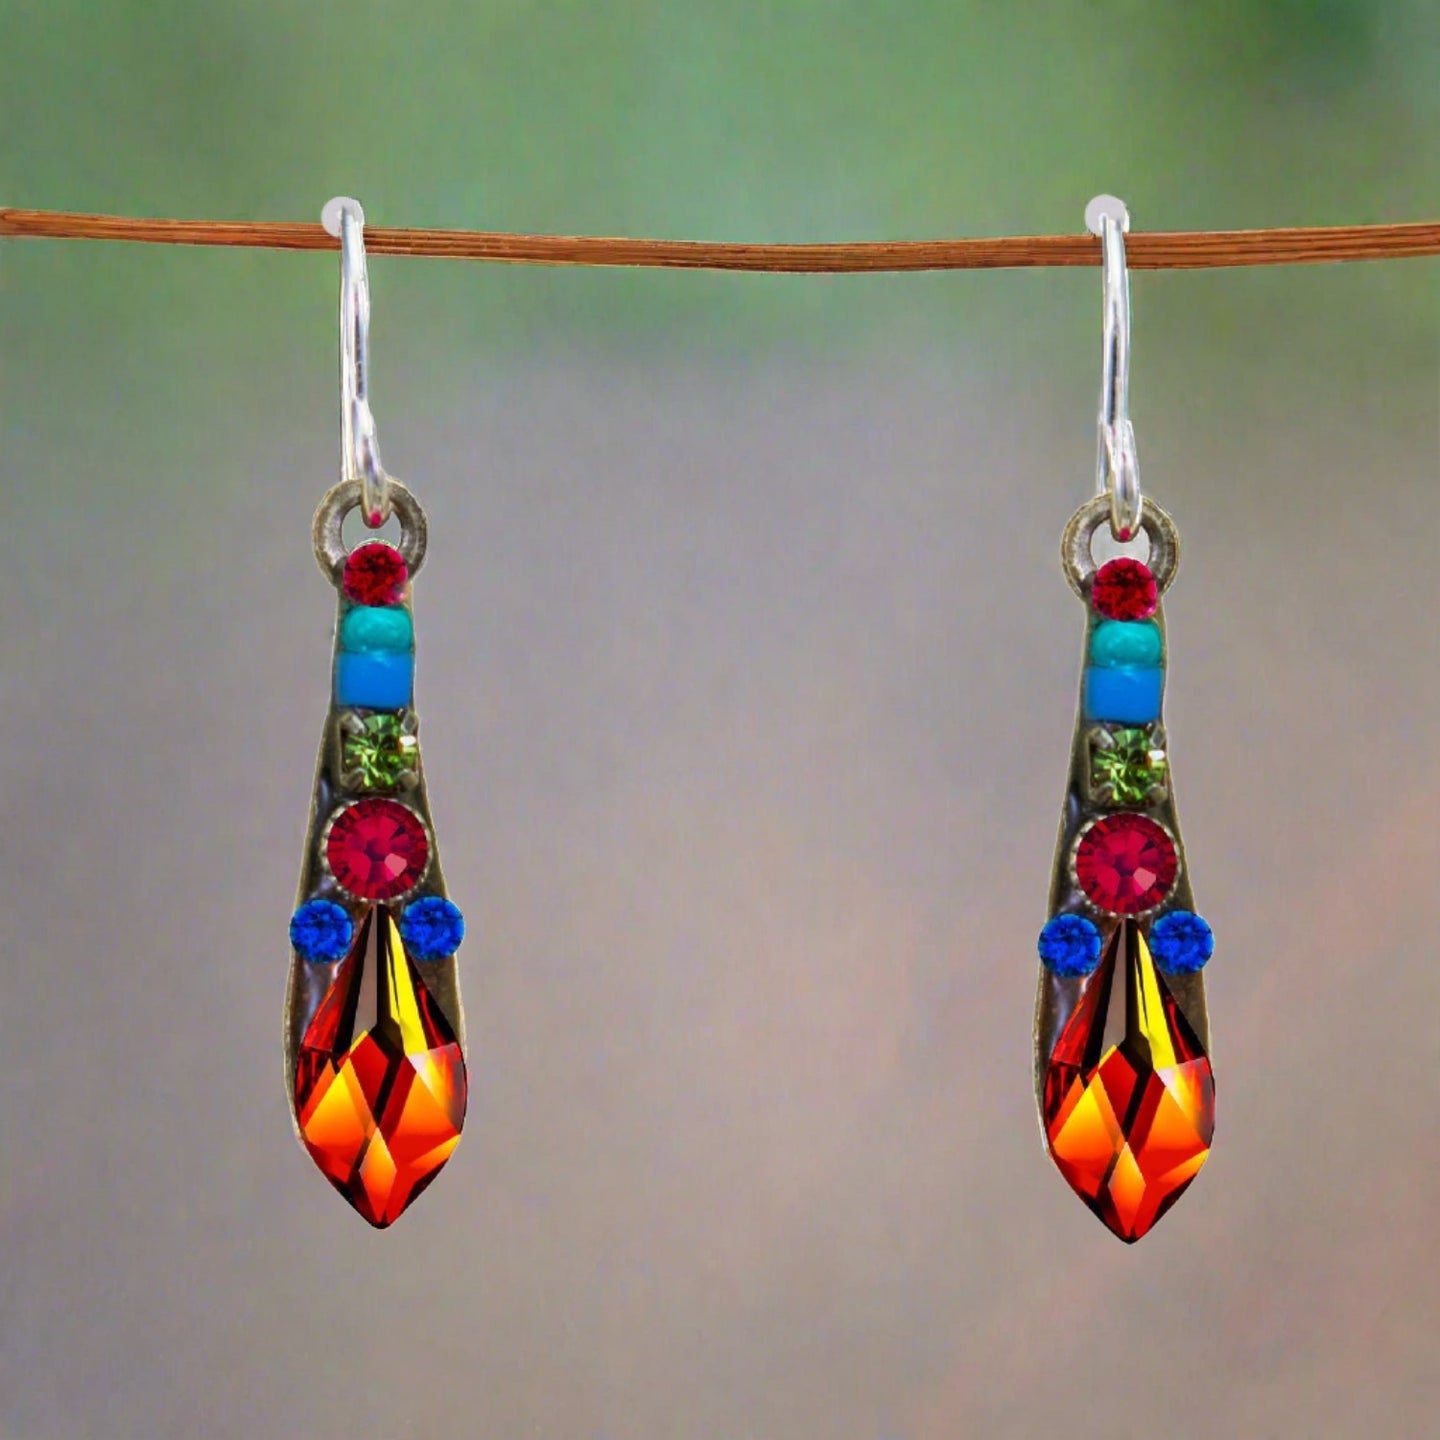 firefly jewelry gazelle small drop earring-multicolor